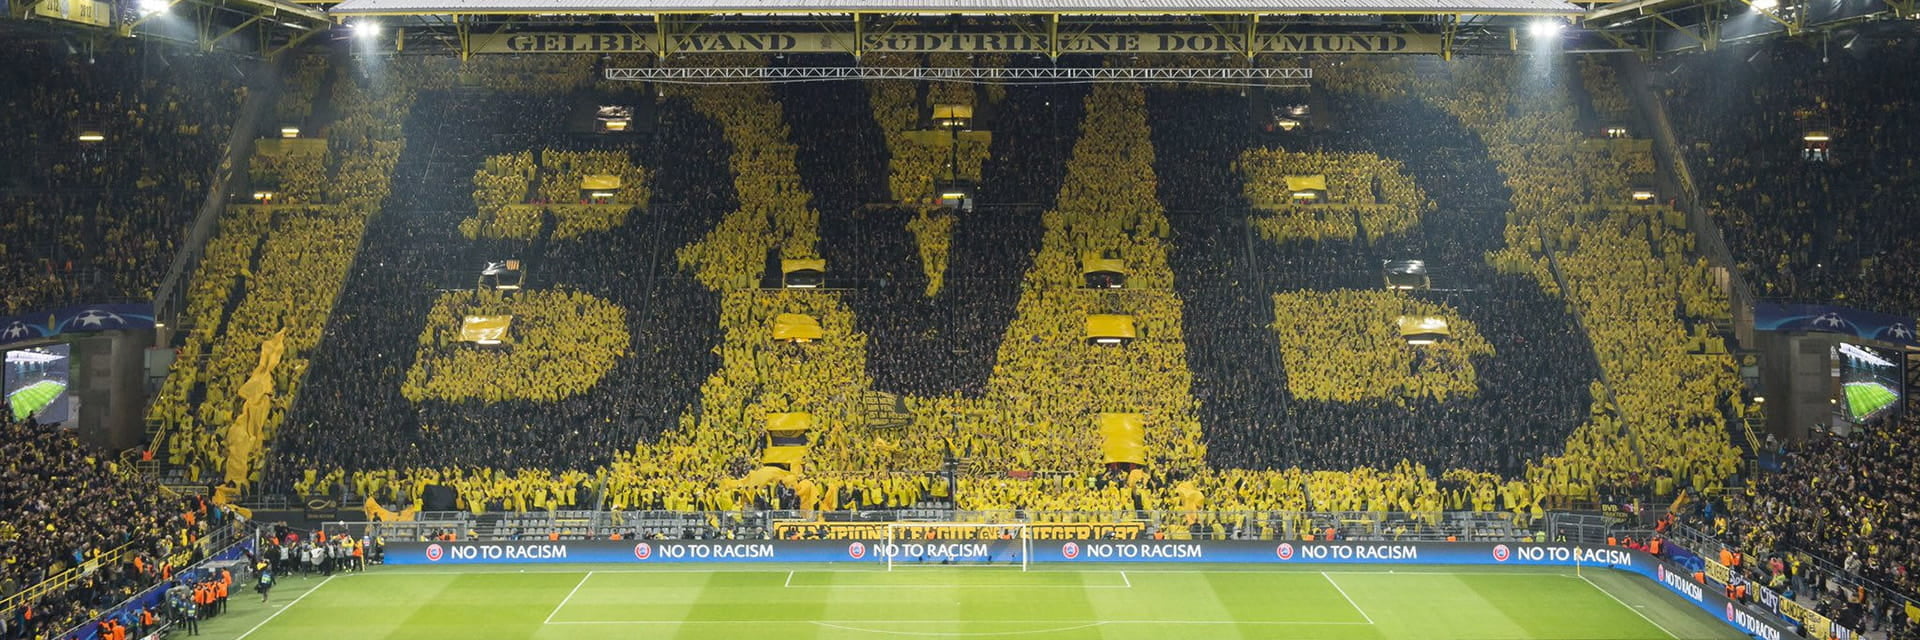 Borussia Dortmund - VfB Stuttgart, 6 oktoberpå 15:30